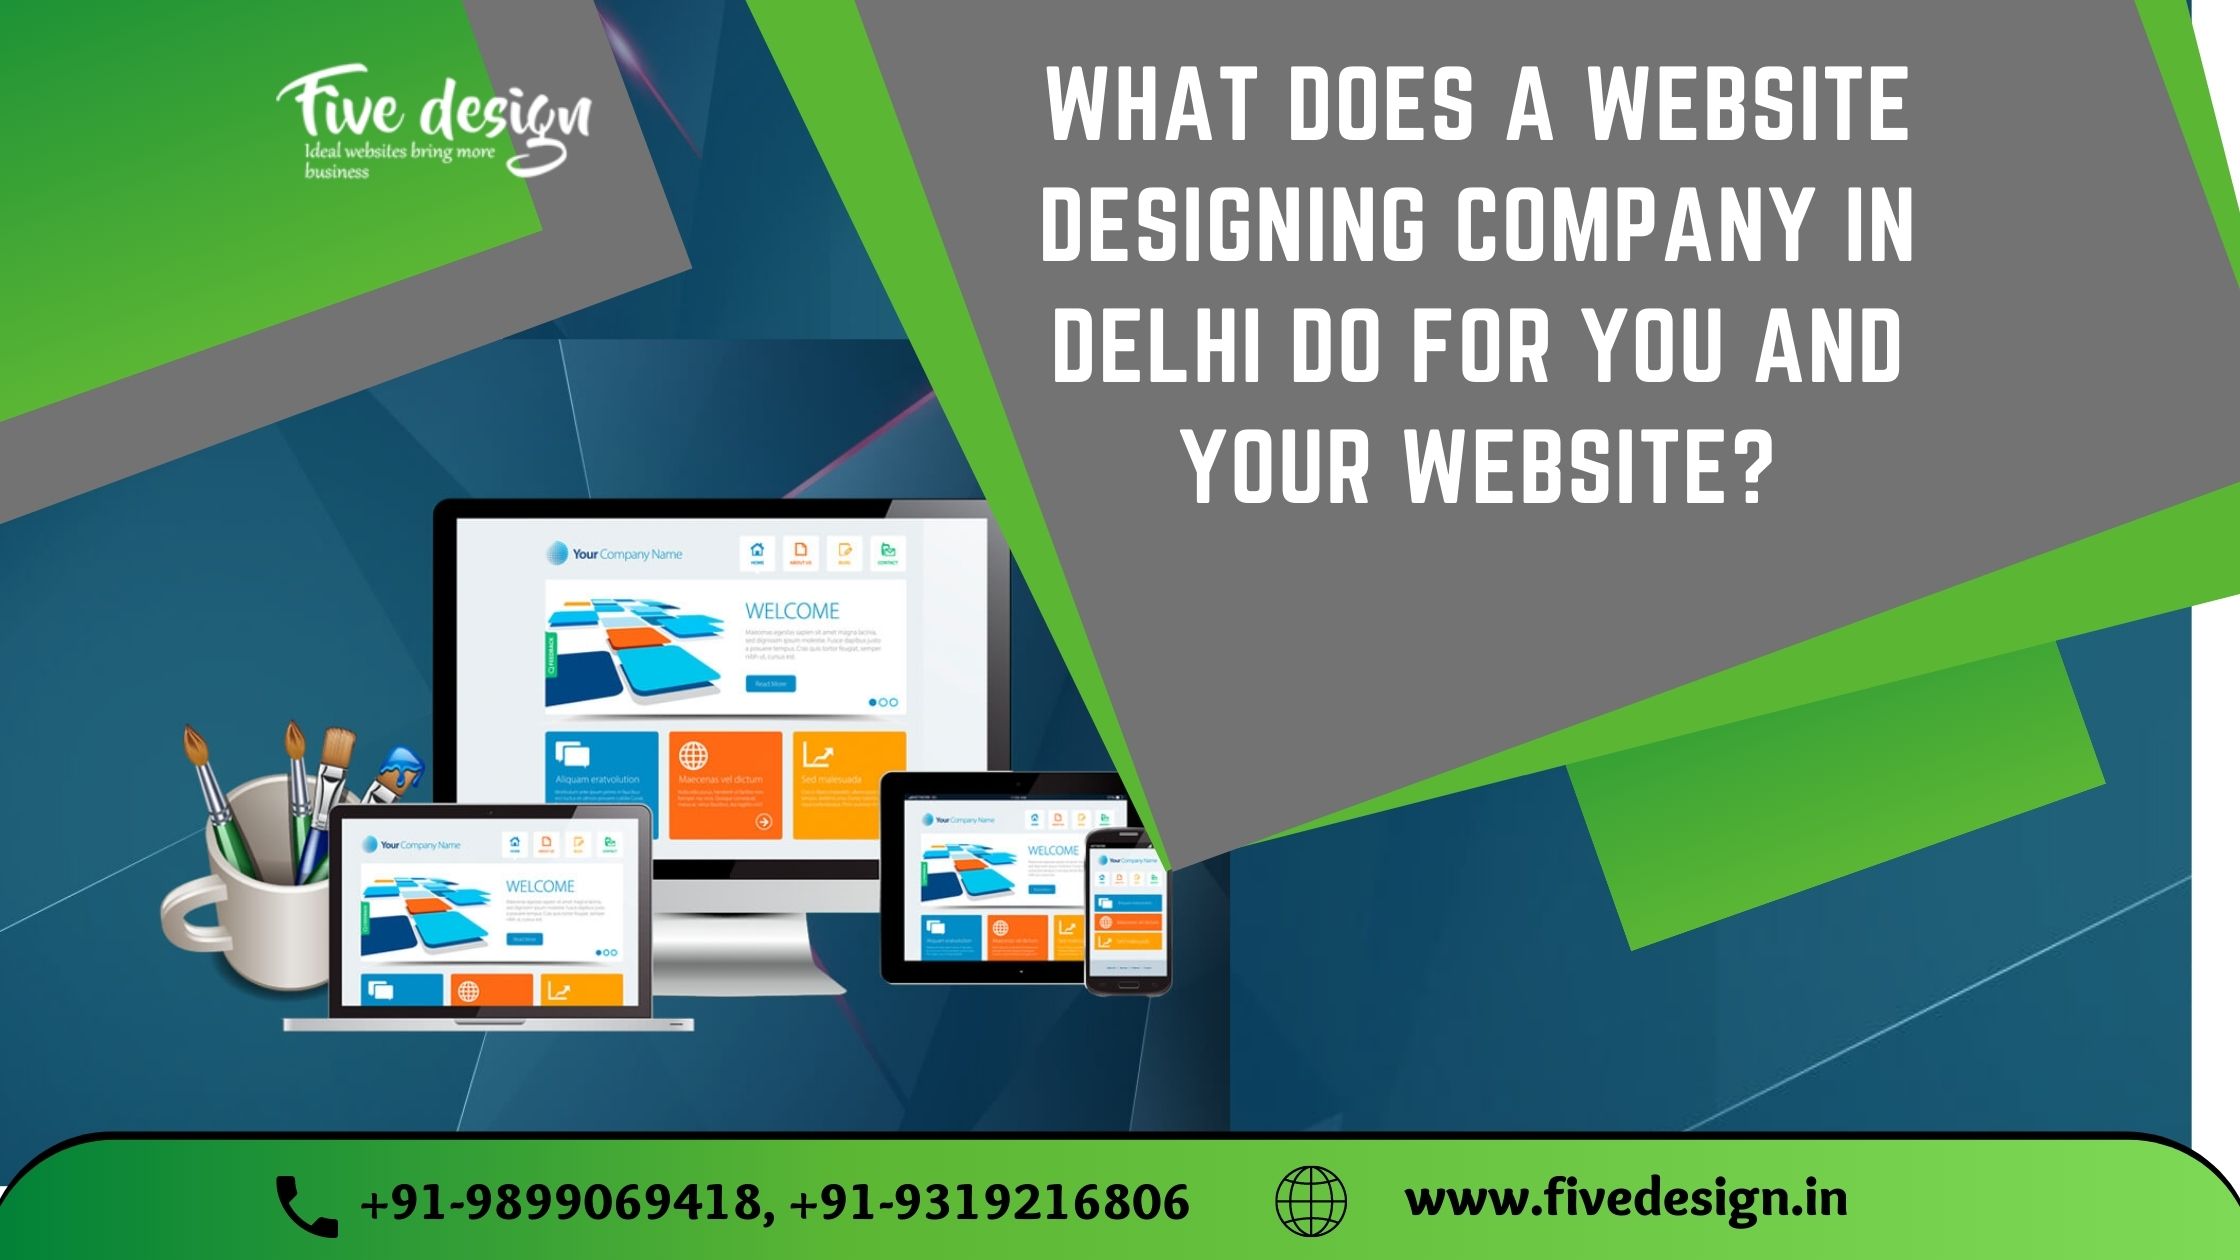 Best Ecommerce Website Designing Company in DelhiServicesAdvertising - DesignEast DelhiOthers